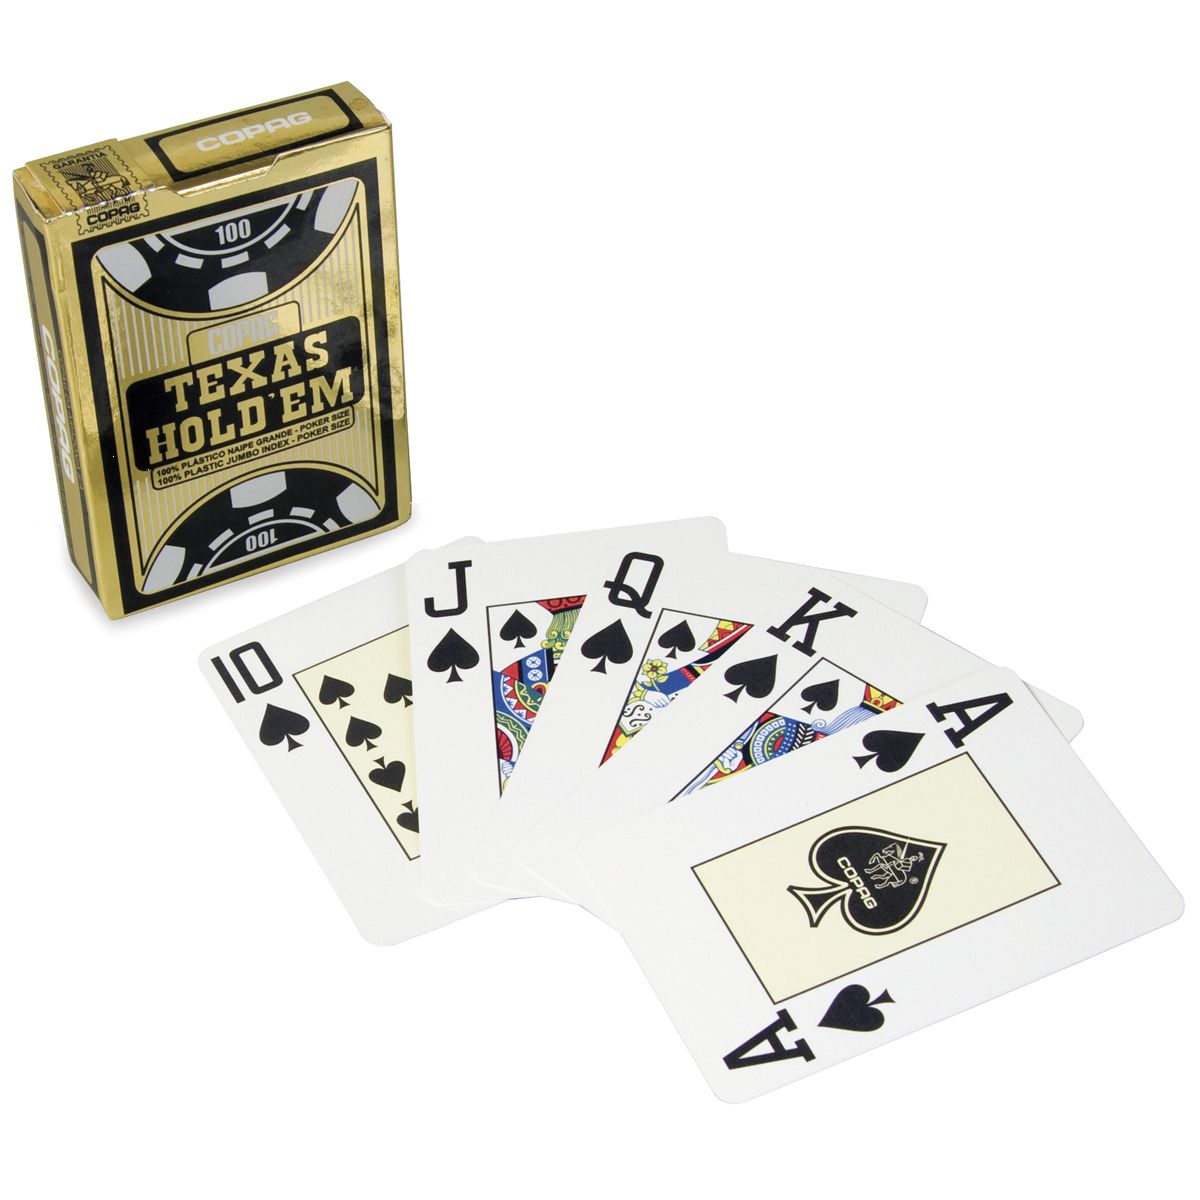 Carte à jouer poker size XXL cartes géantes - Totalcadeau